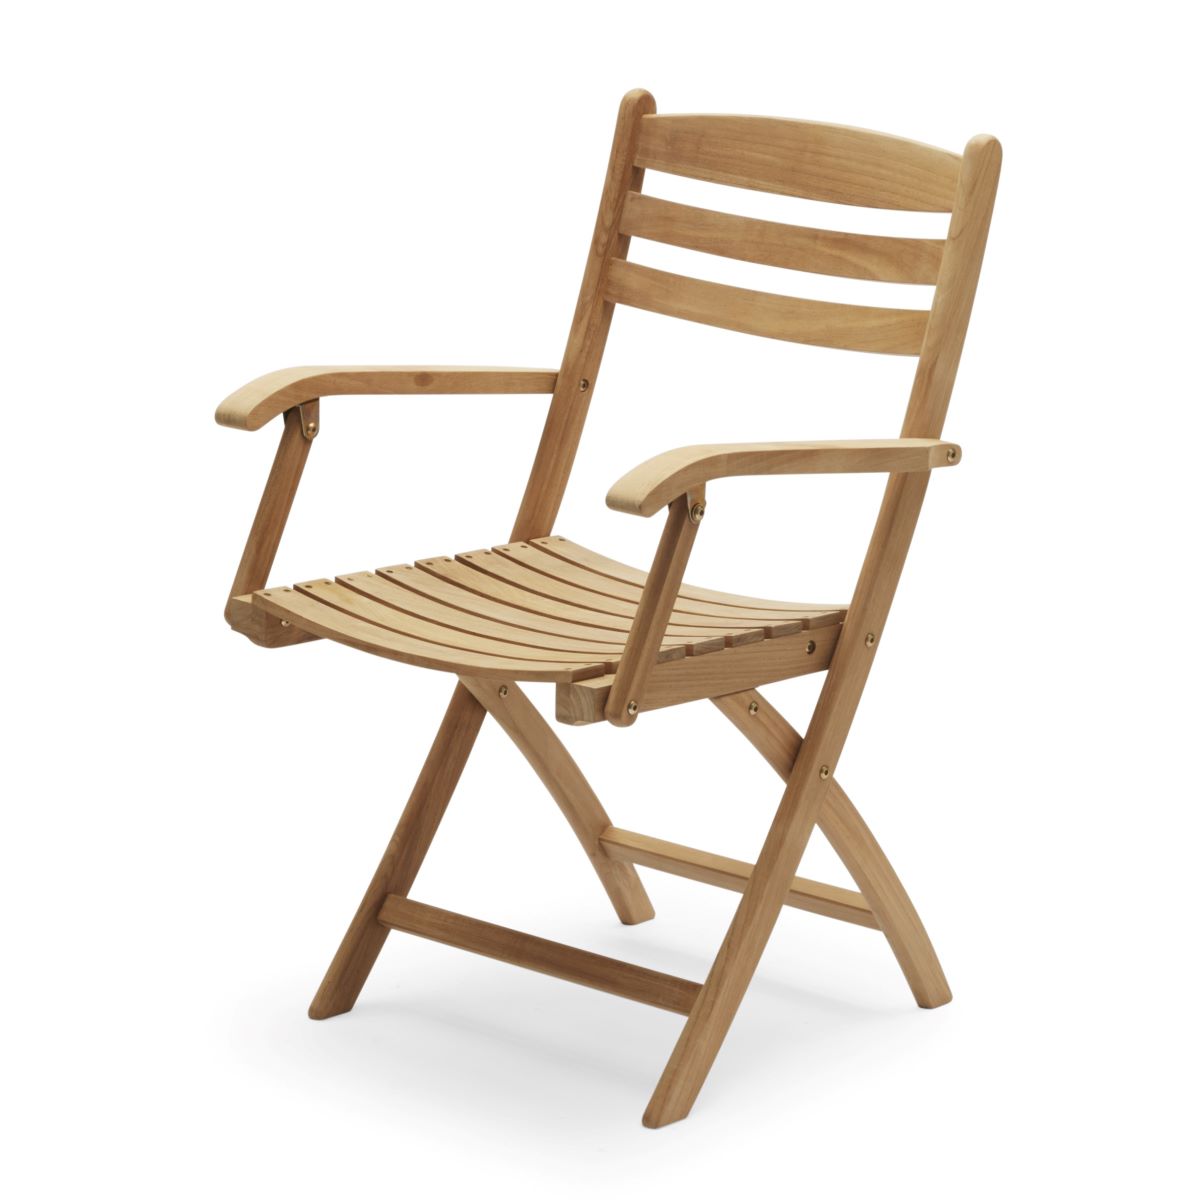 https://bo.alinhadavizinha.com/FileUploads/produtos/mobiliario/cadeiras/s1400505_selandia-armchair_1.jpg